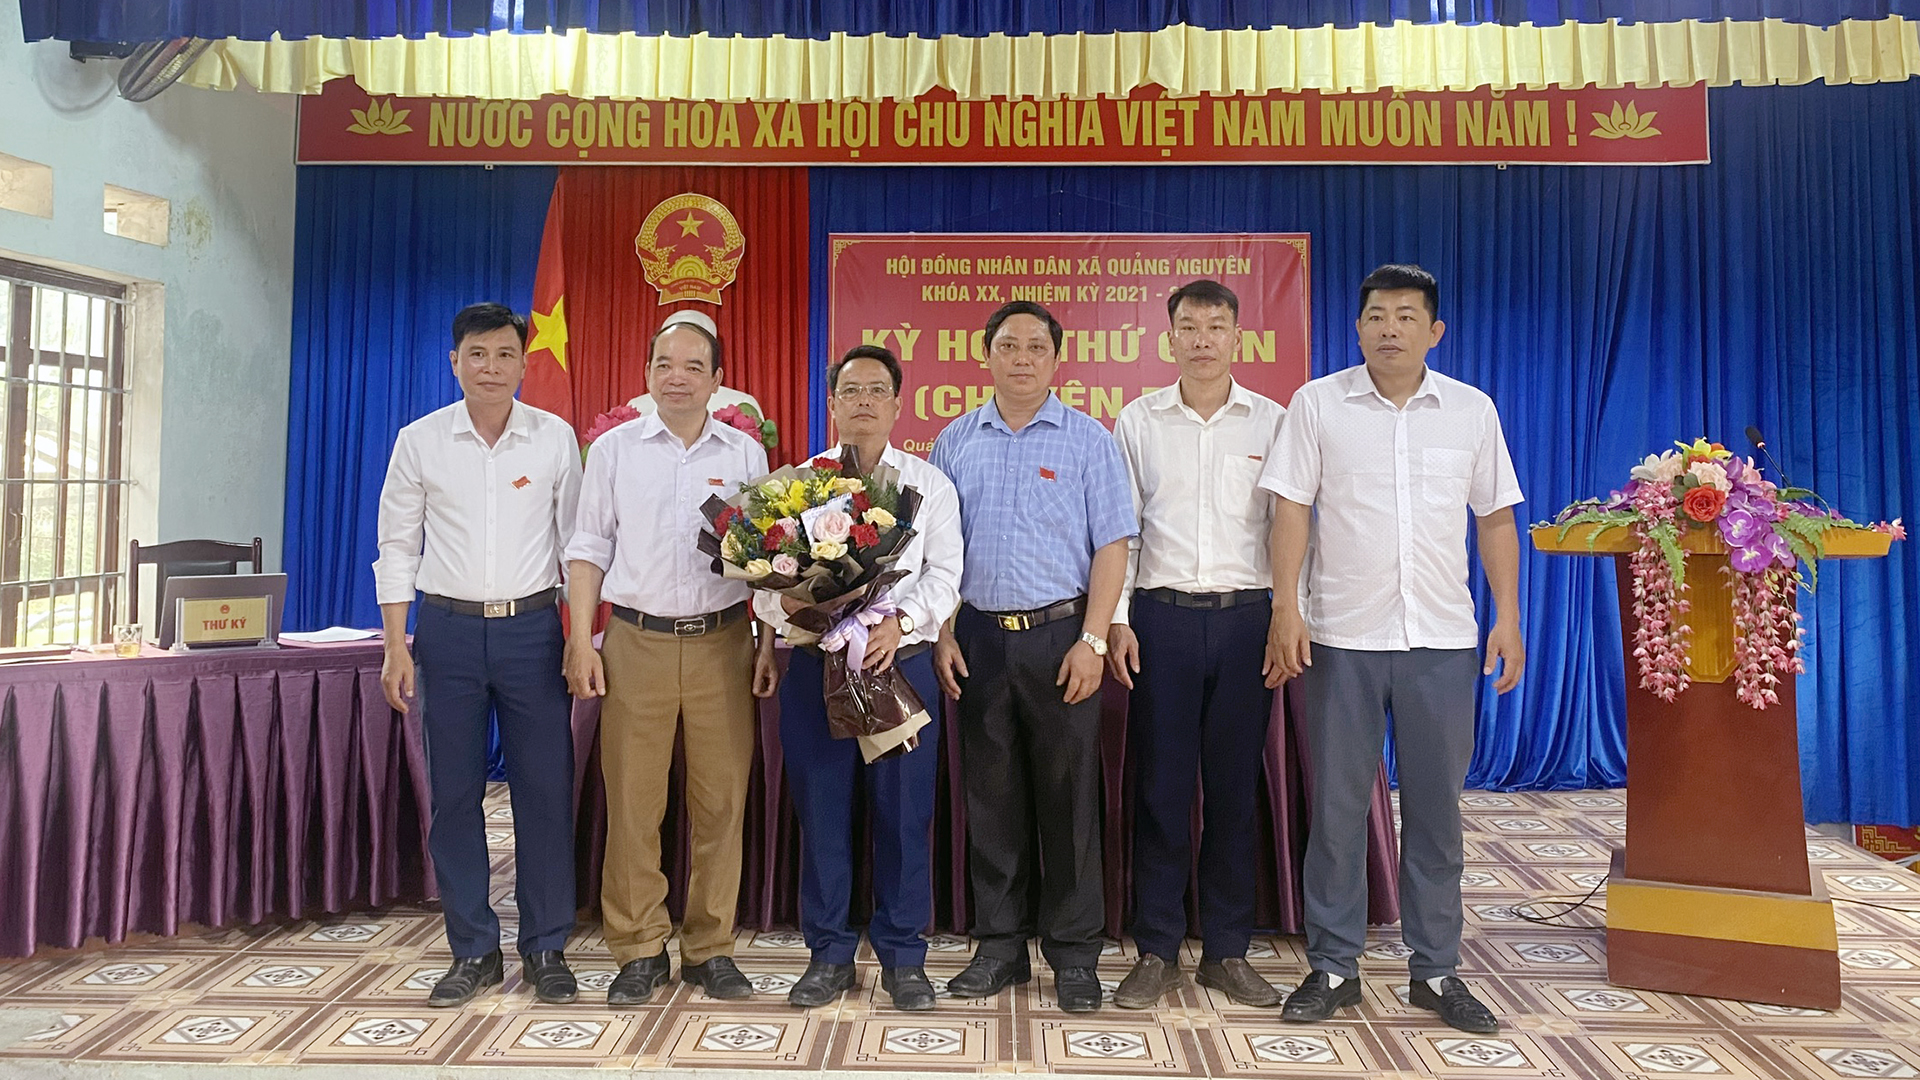 Hội đồng nhân dân xã Quảng Nguyên tổ chức Kỳ họp thứ 9 (Chuyên đề)